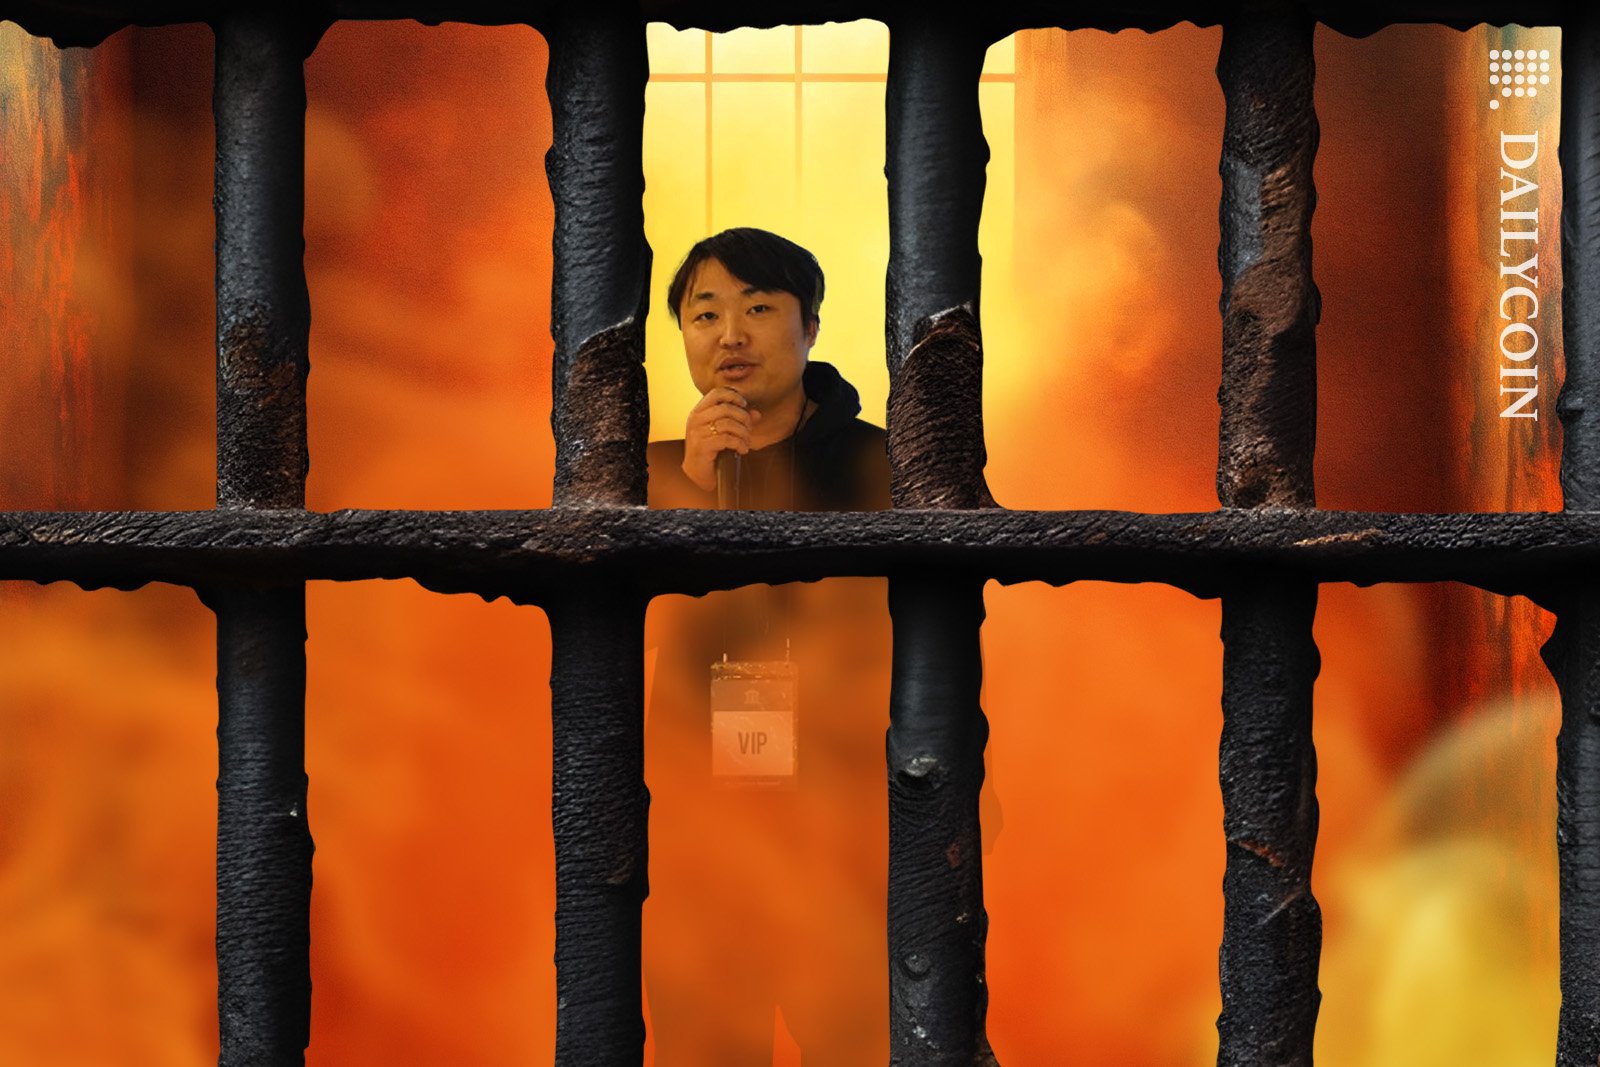 Bitsonic CEO Jinwook Shin doing standup in prison.